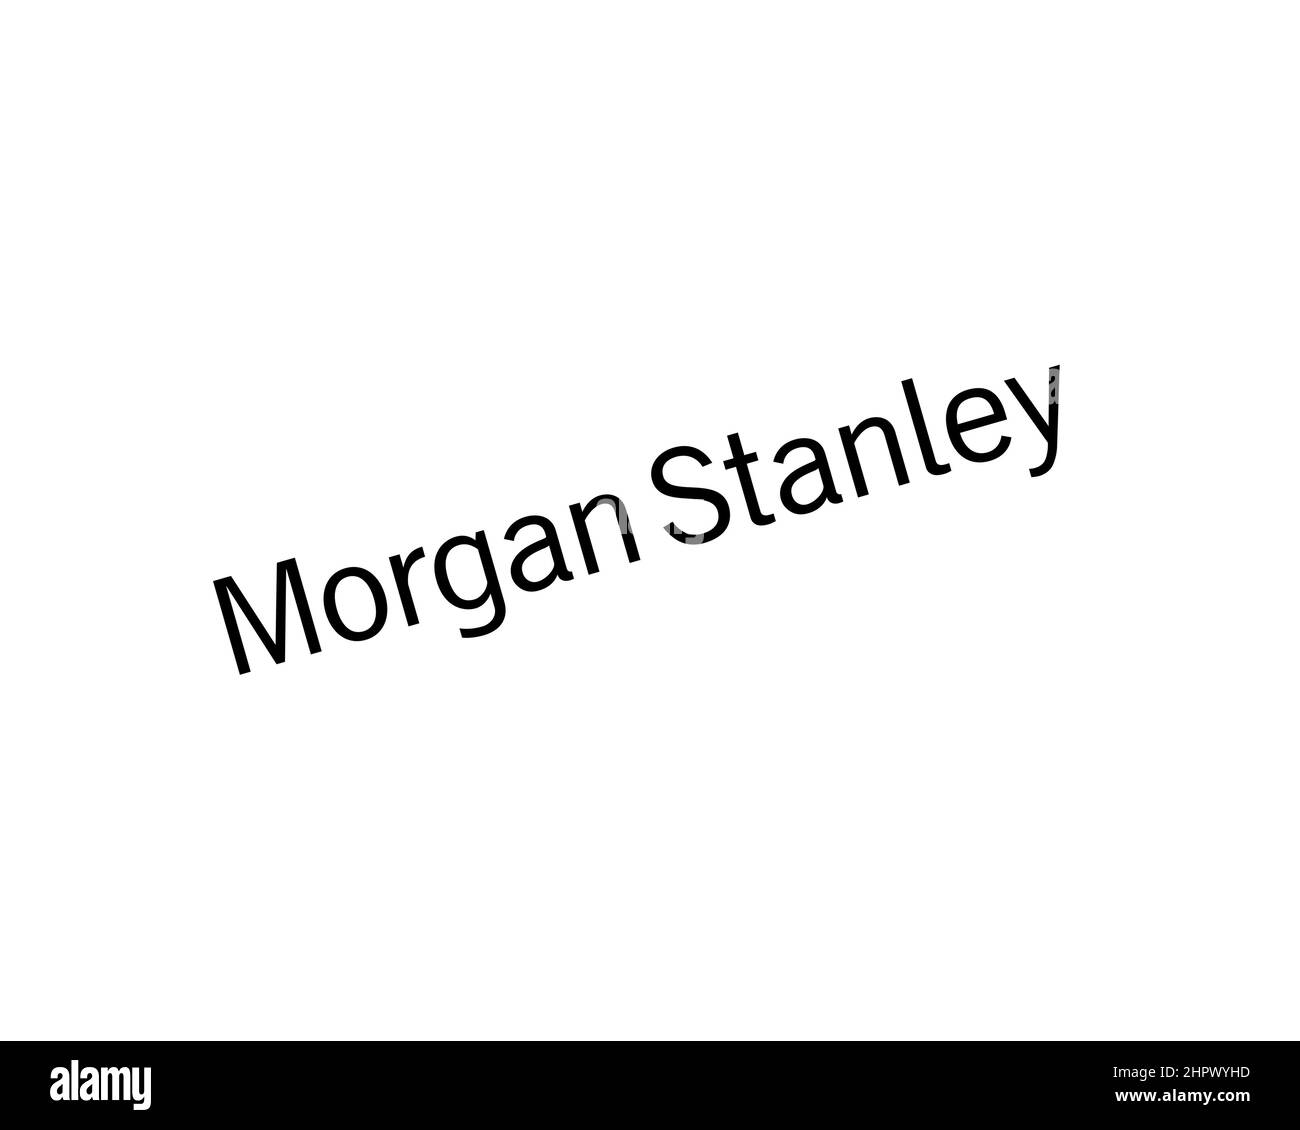 Morgan Stanley, pivoté, fond blanc, logo, marque Banque D'Images